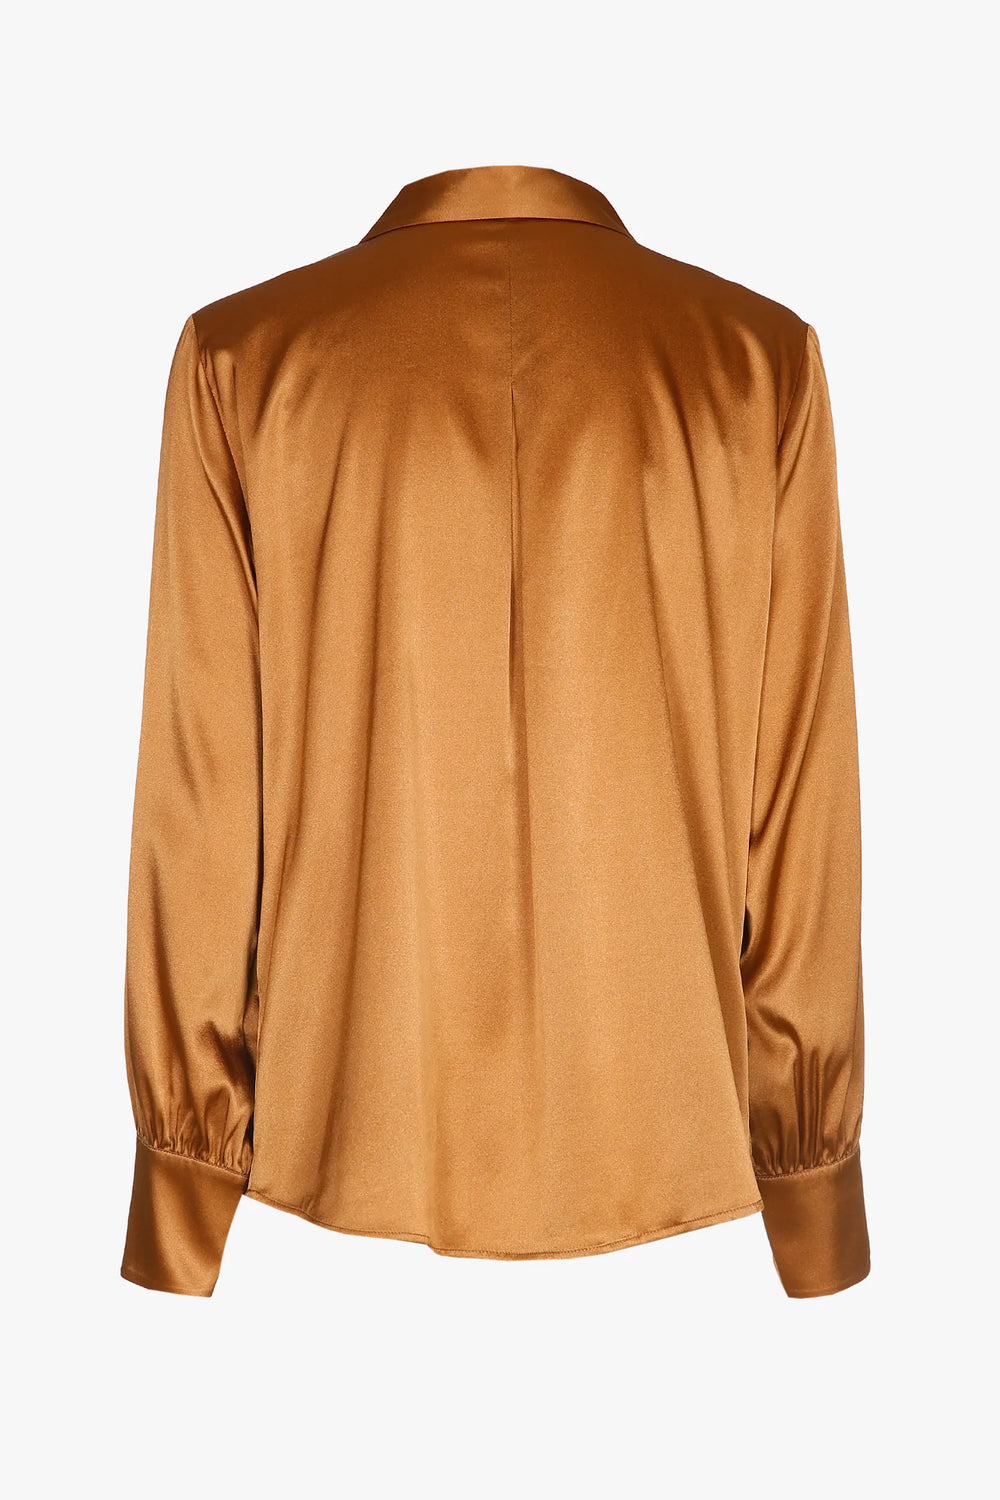 camel zijden blouse - xandres - - grote maten - dameskleding - kledingwinkel - herent - leuven